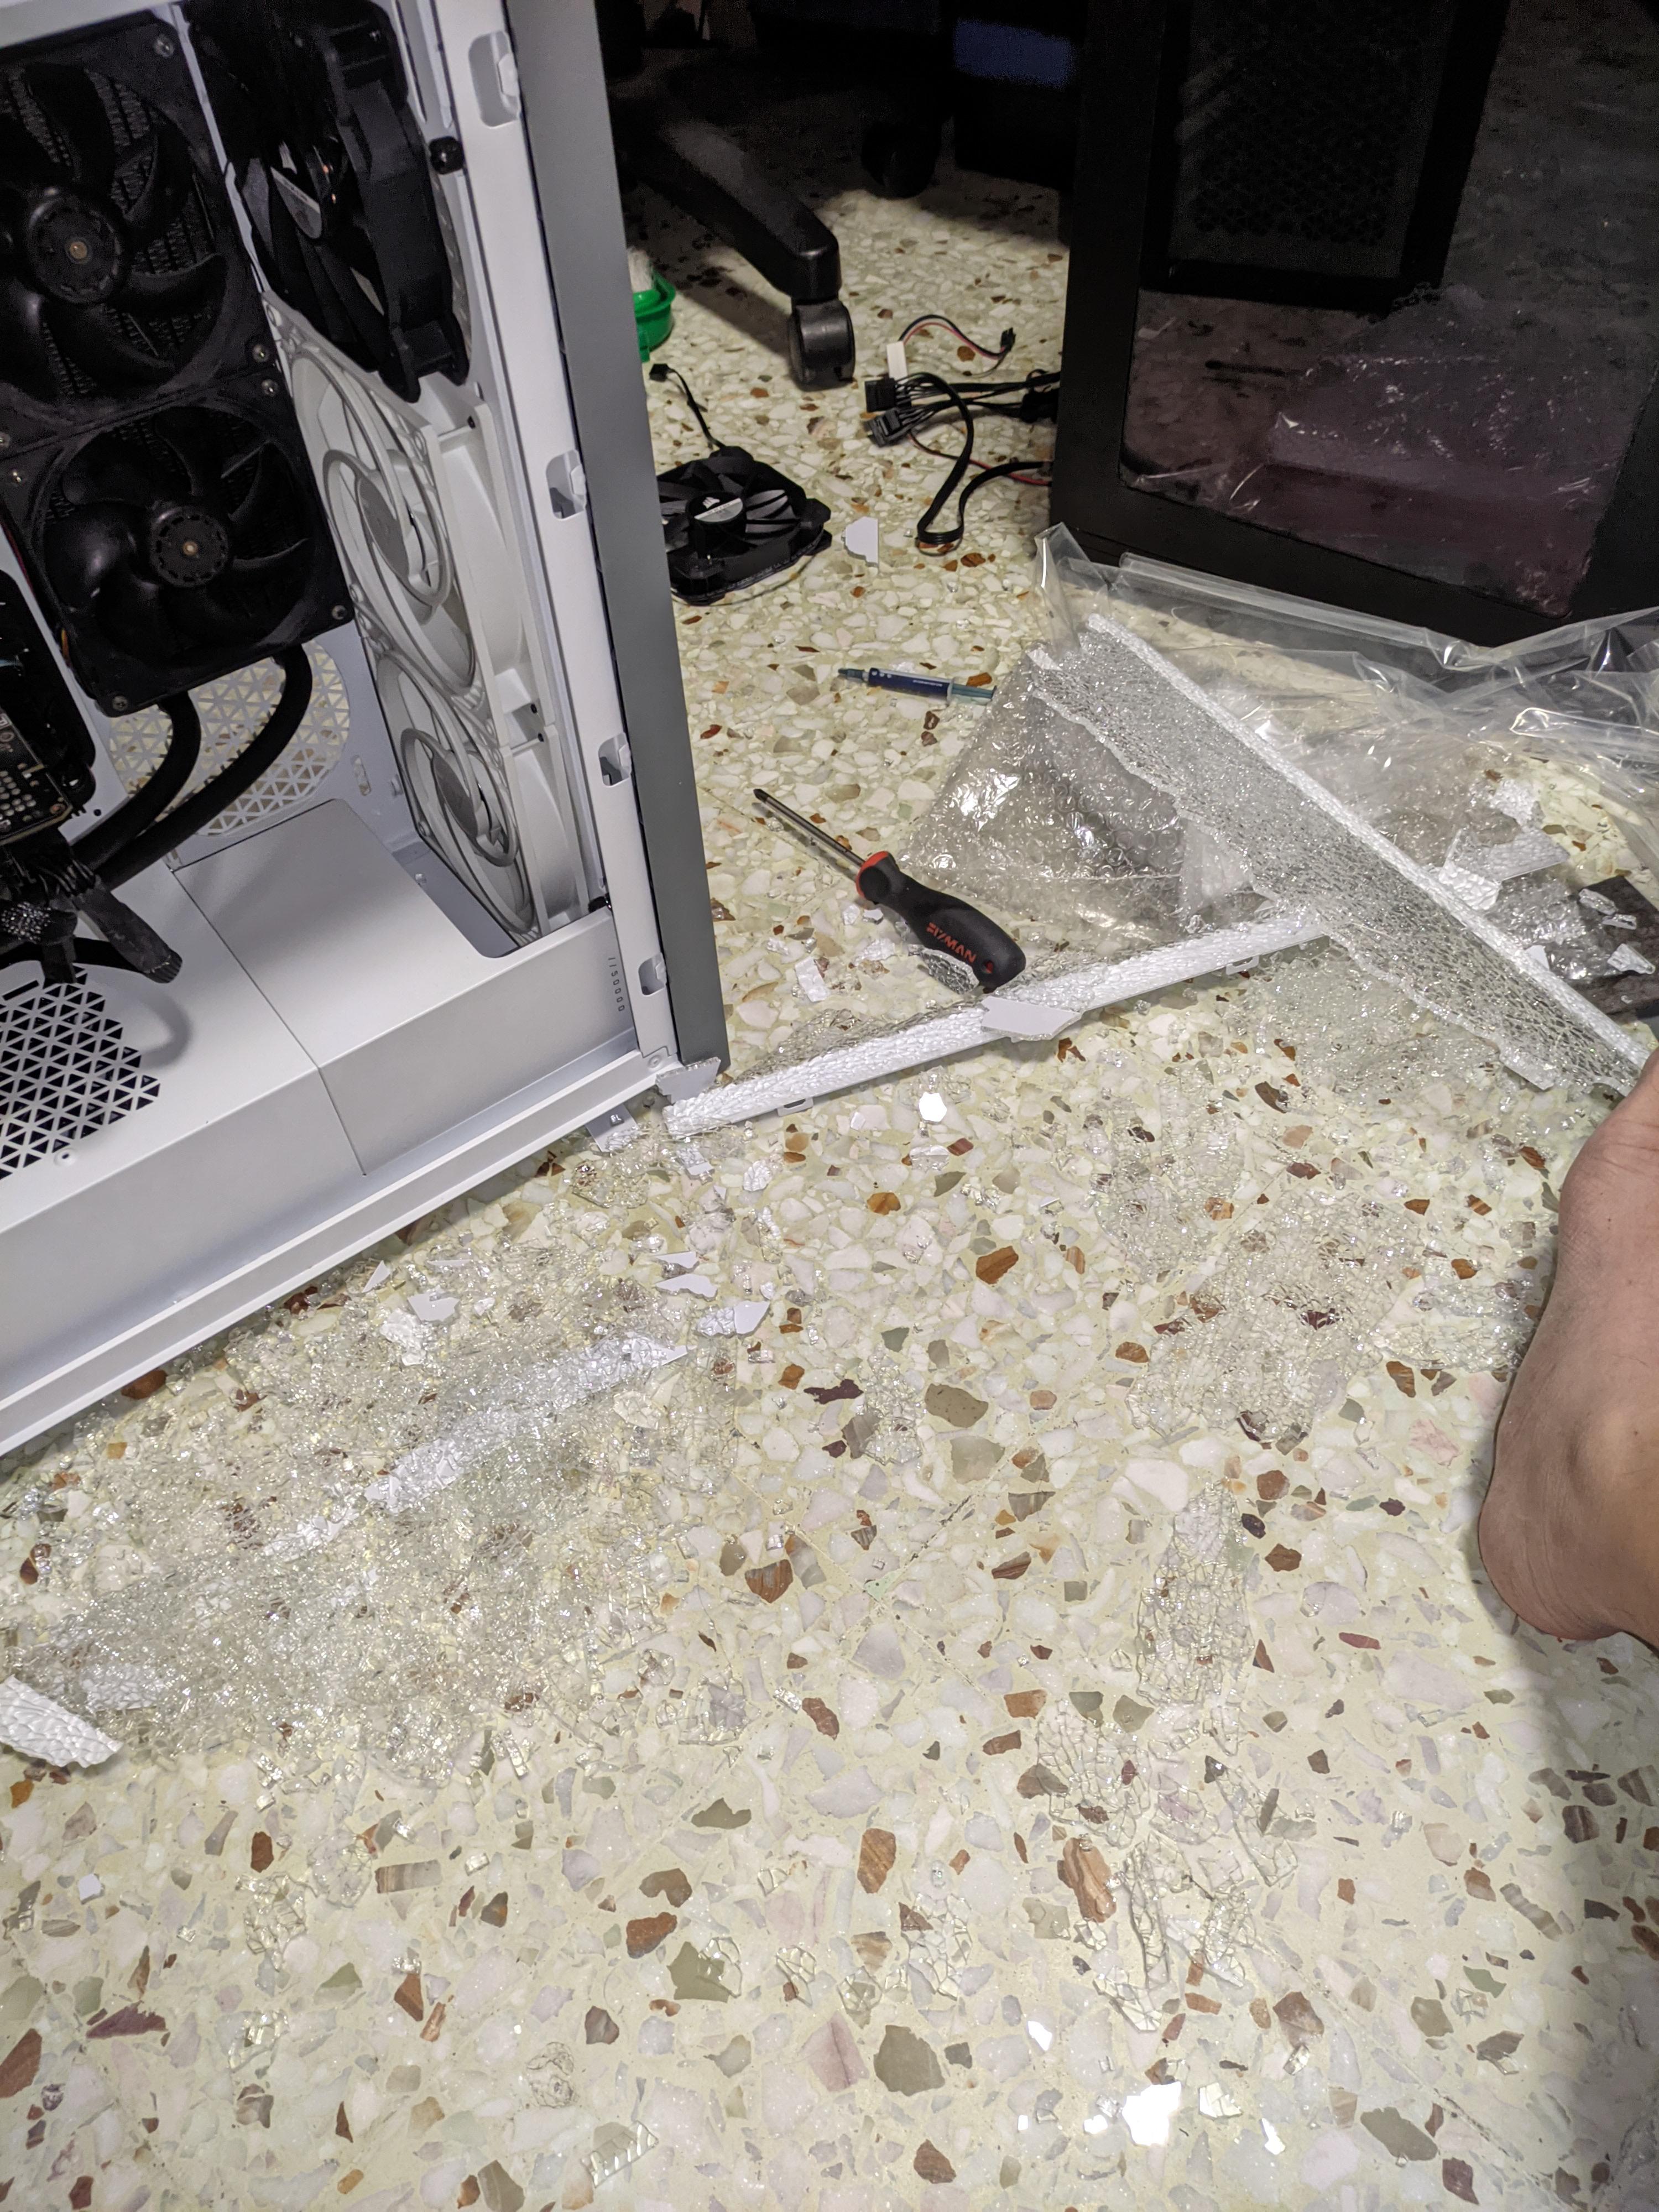 r/hardwaregore - a broken computer on the floor